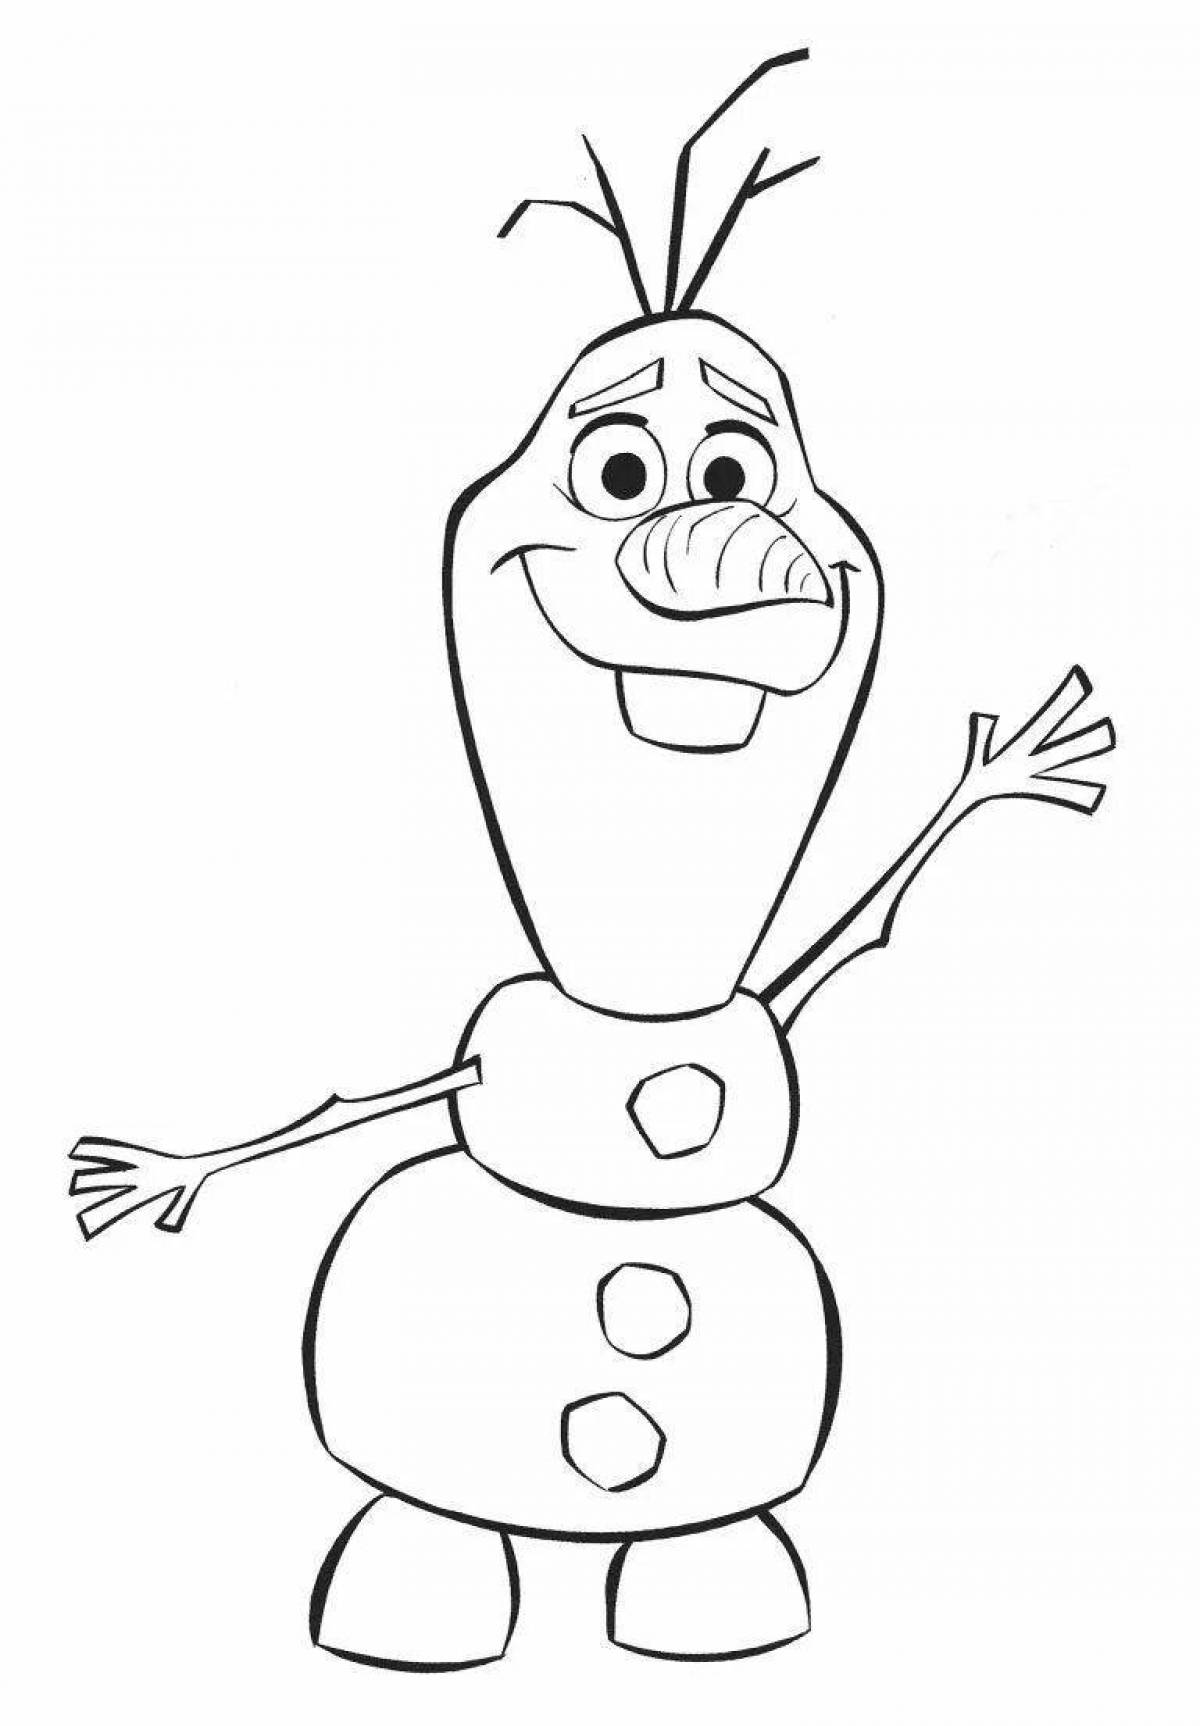 Olaf the snowman #4